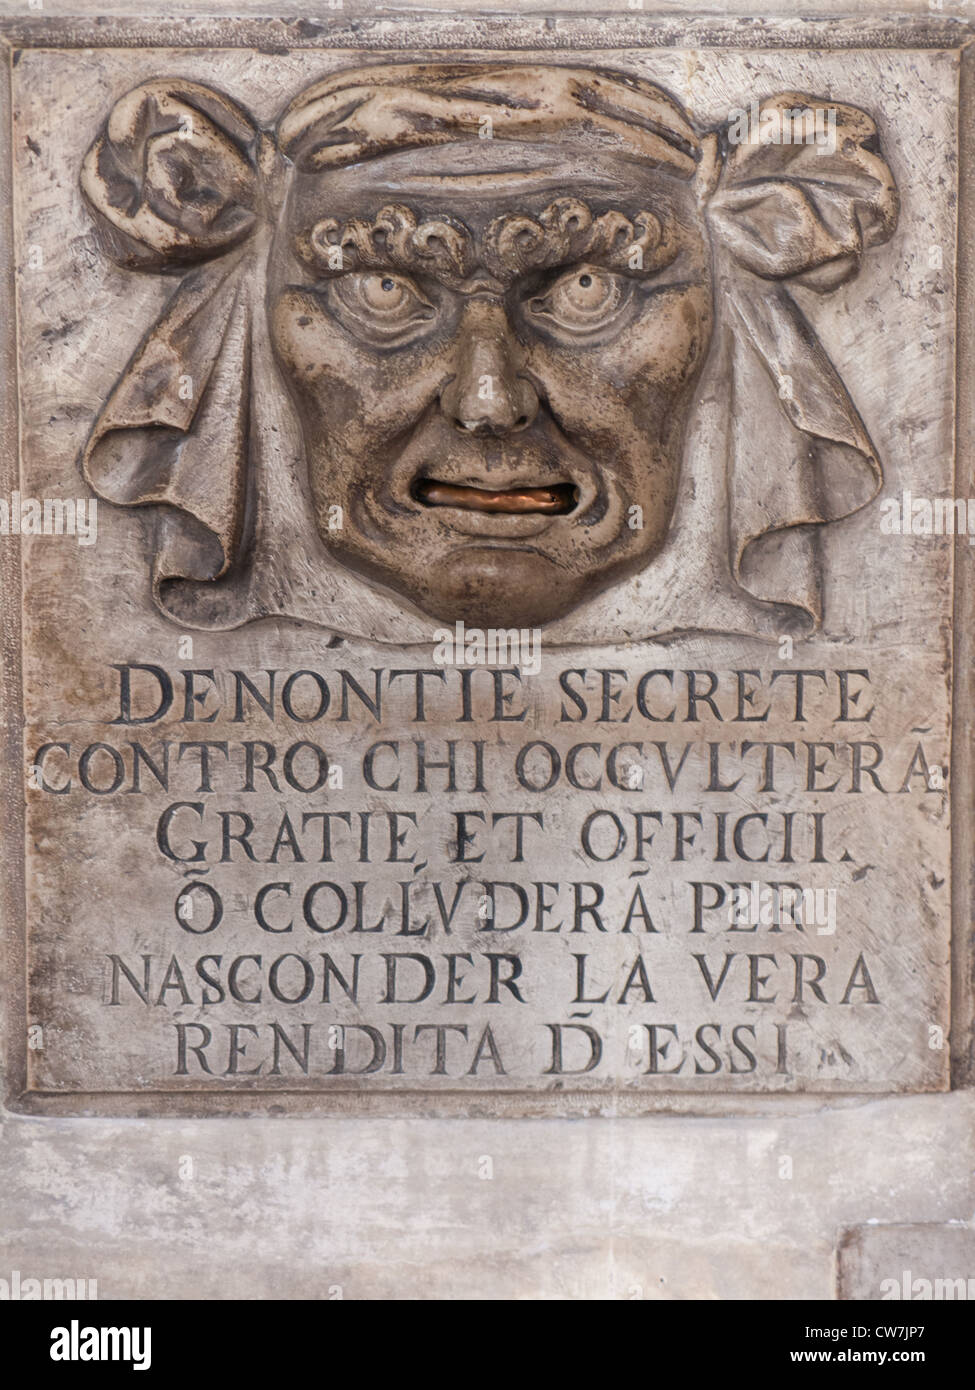 Dogenpalast "Löwenmaul" Briefkasten für anonyme Denunziationen, Venedig, Italien. Stockfoto